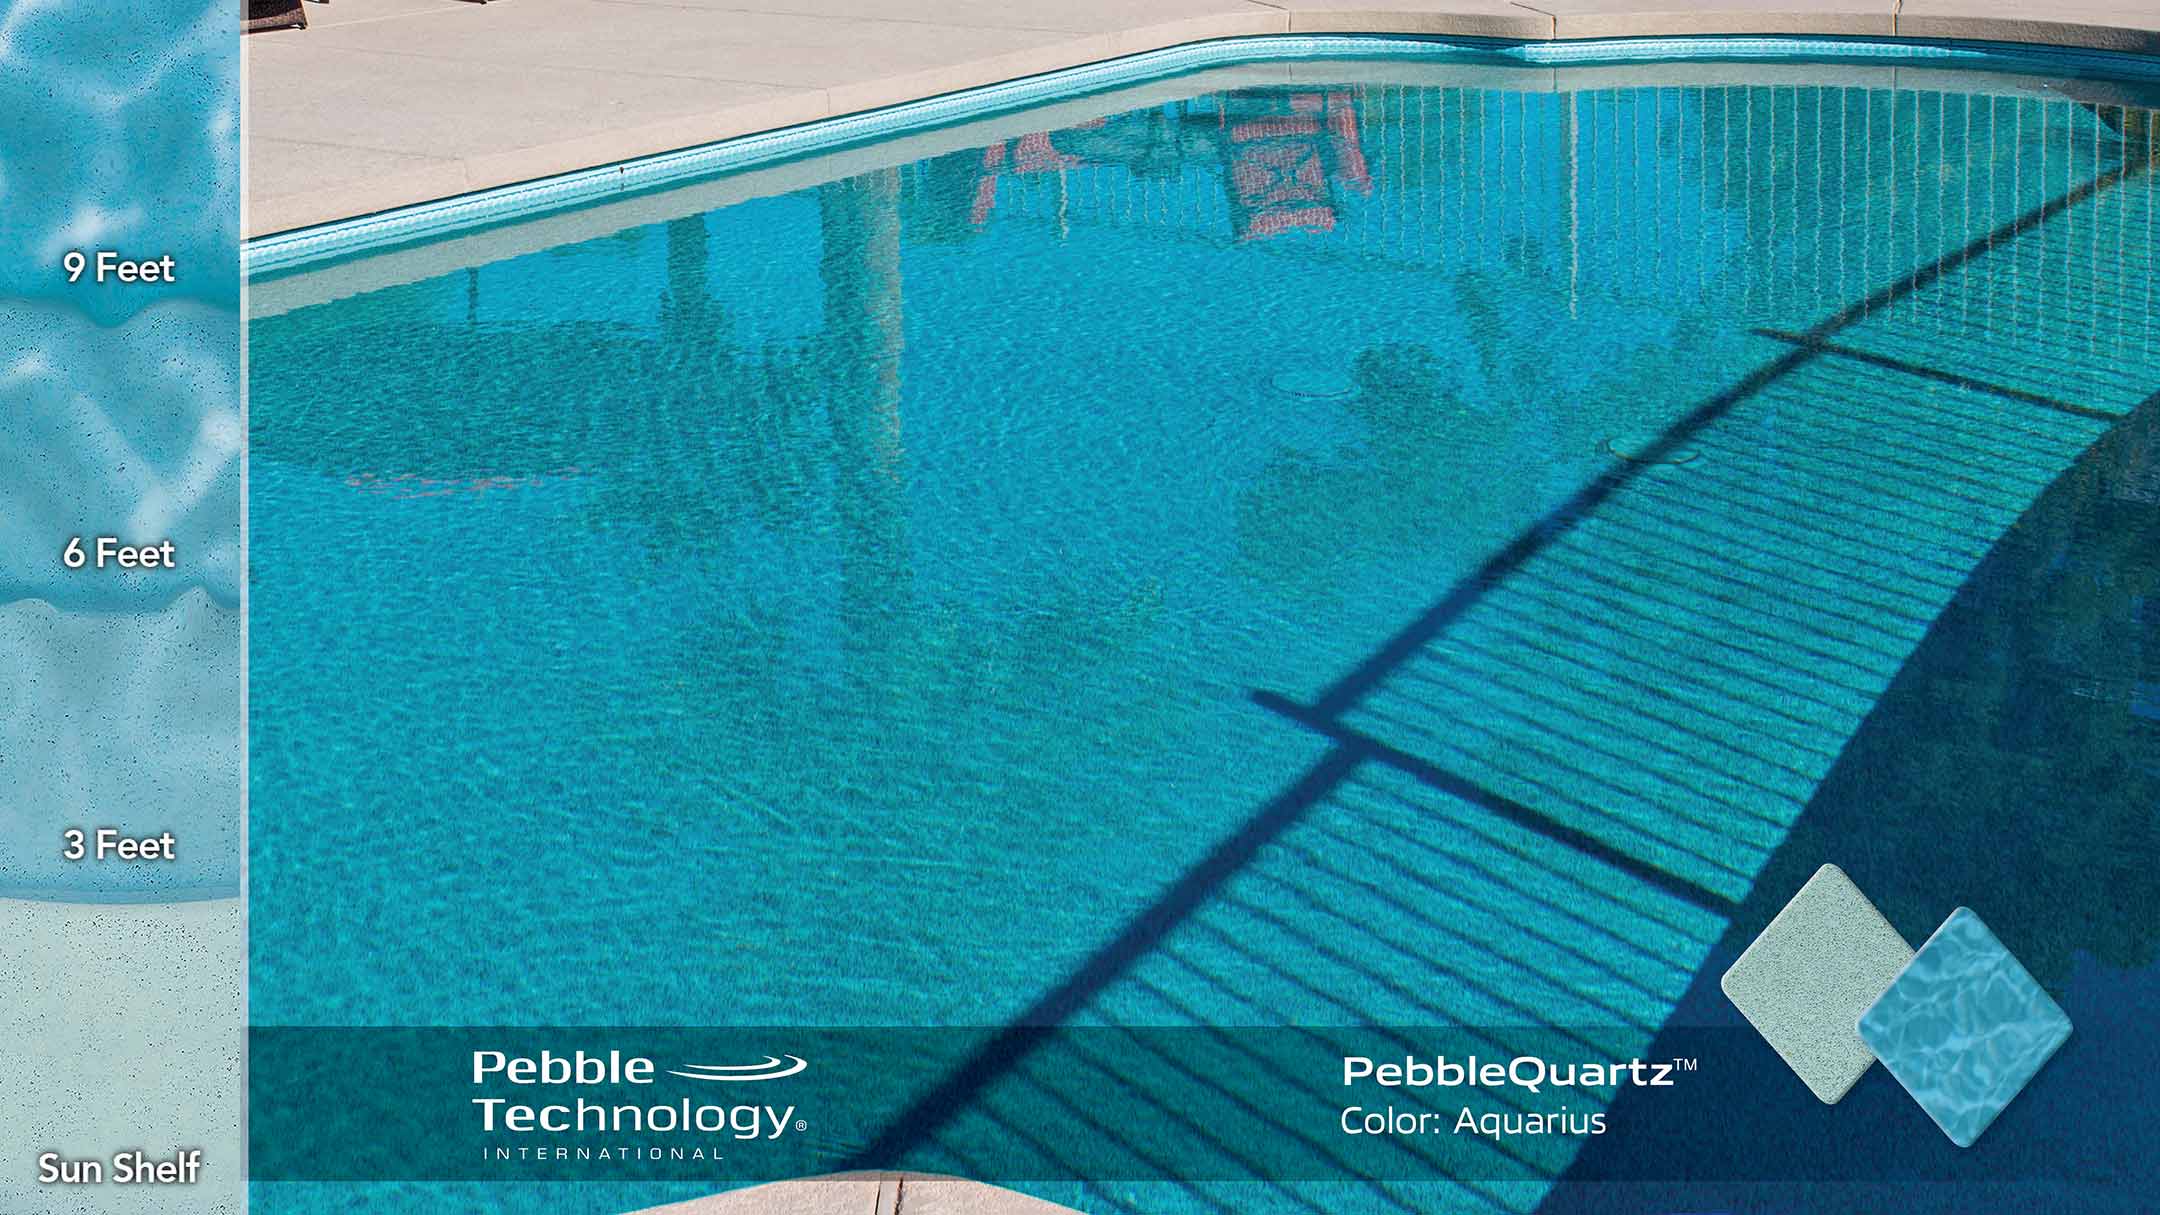 Photo Collage of Pebble Quartz Aquarius Pool Finish